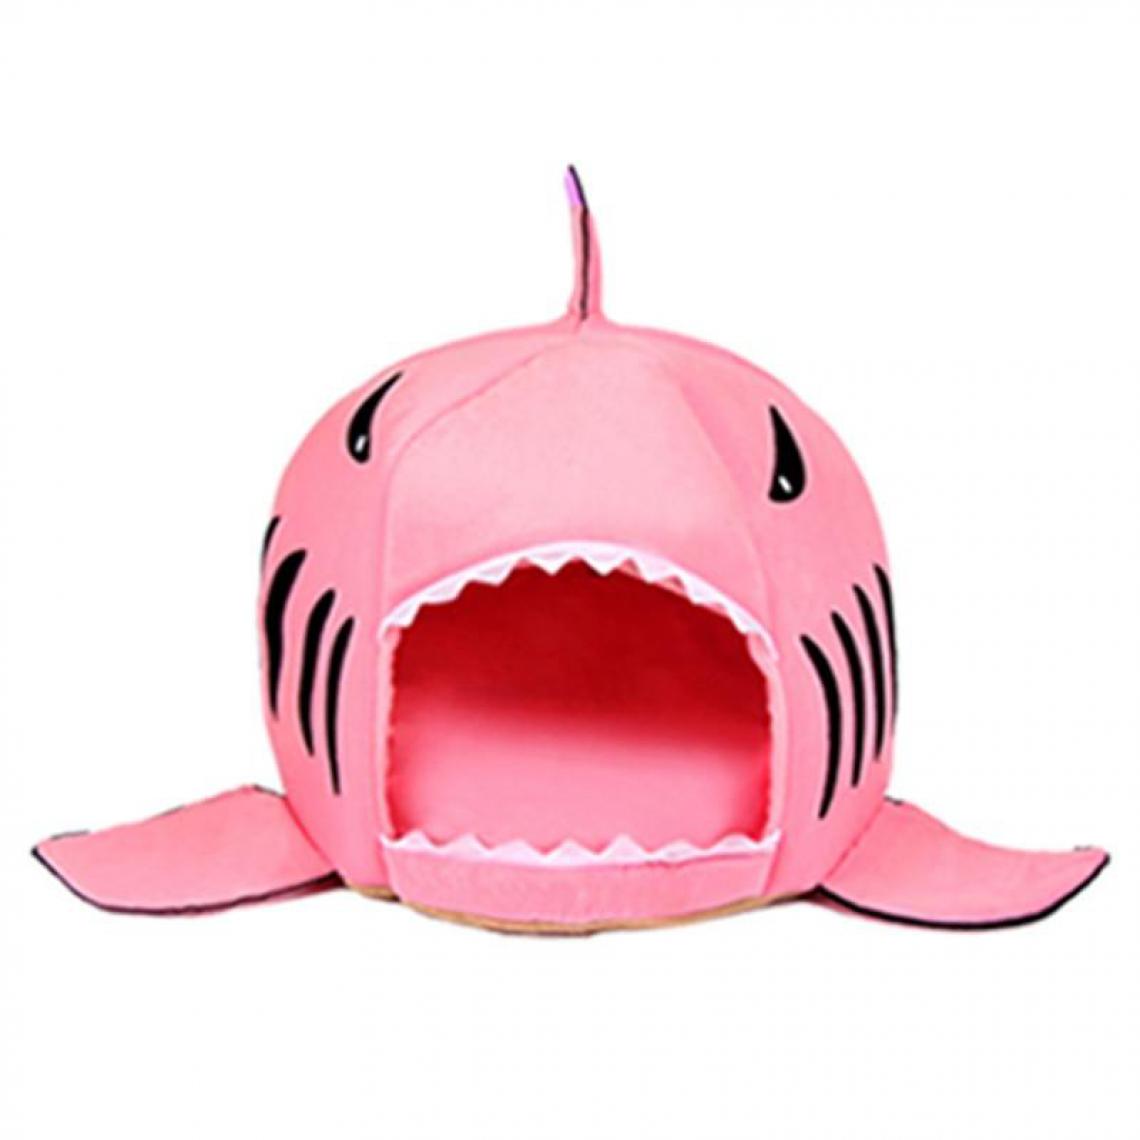 Justgreenbox - Requin Pet Maison Lit Pour Chiens Chats Petits Animaux Produits, Rose - Niche pour chien